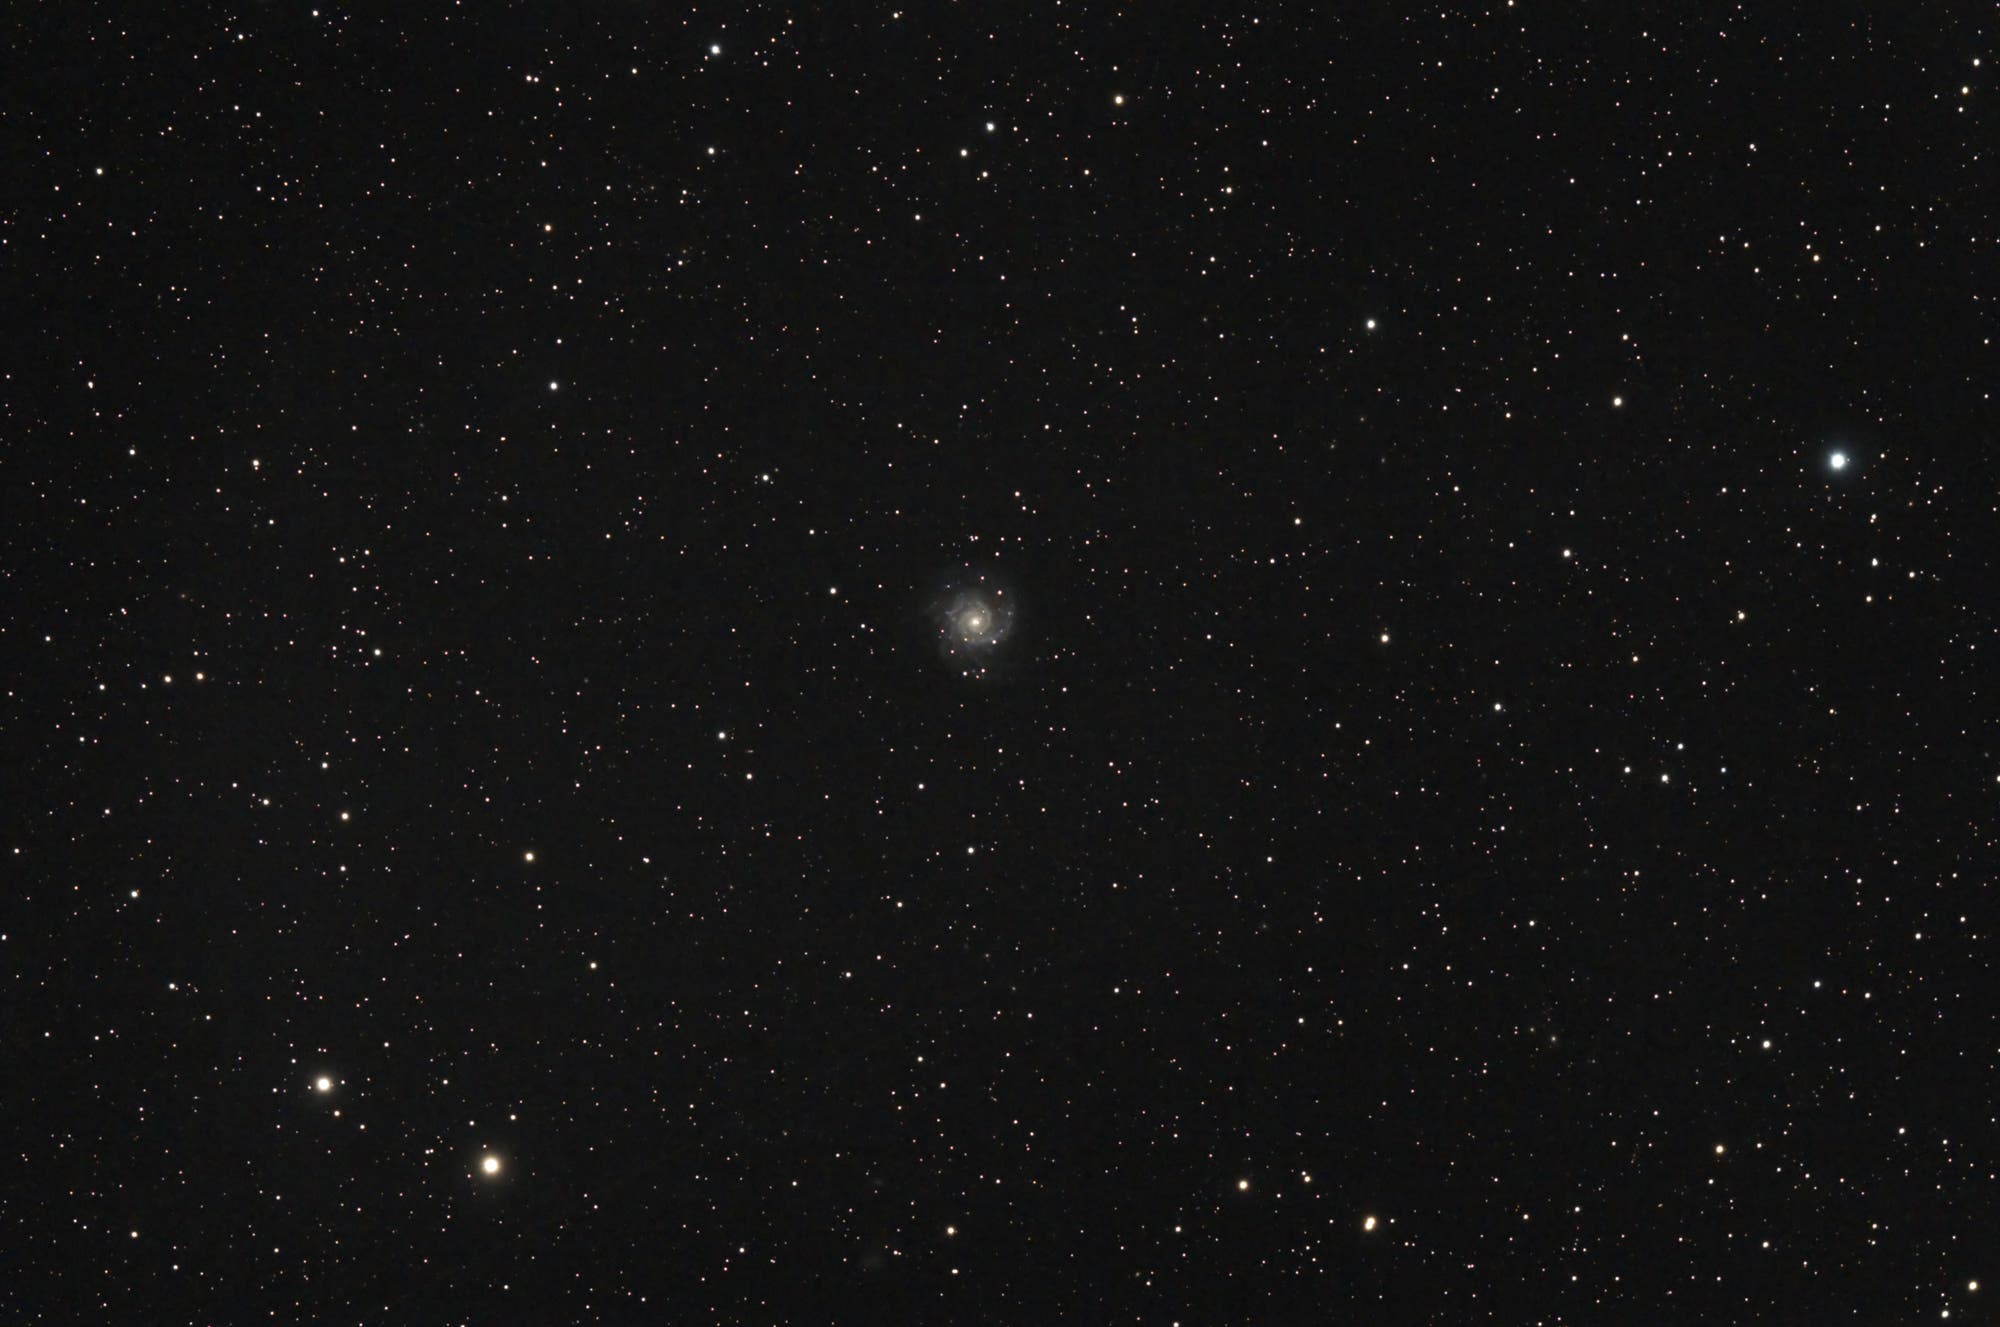 SN 2013ej in M 74